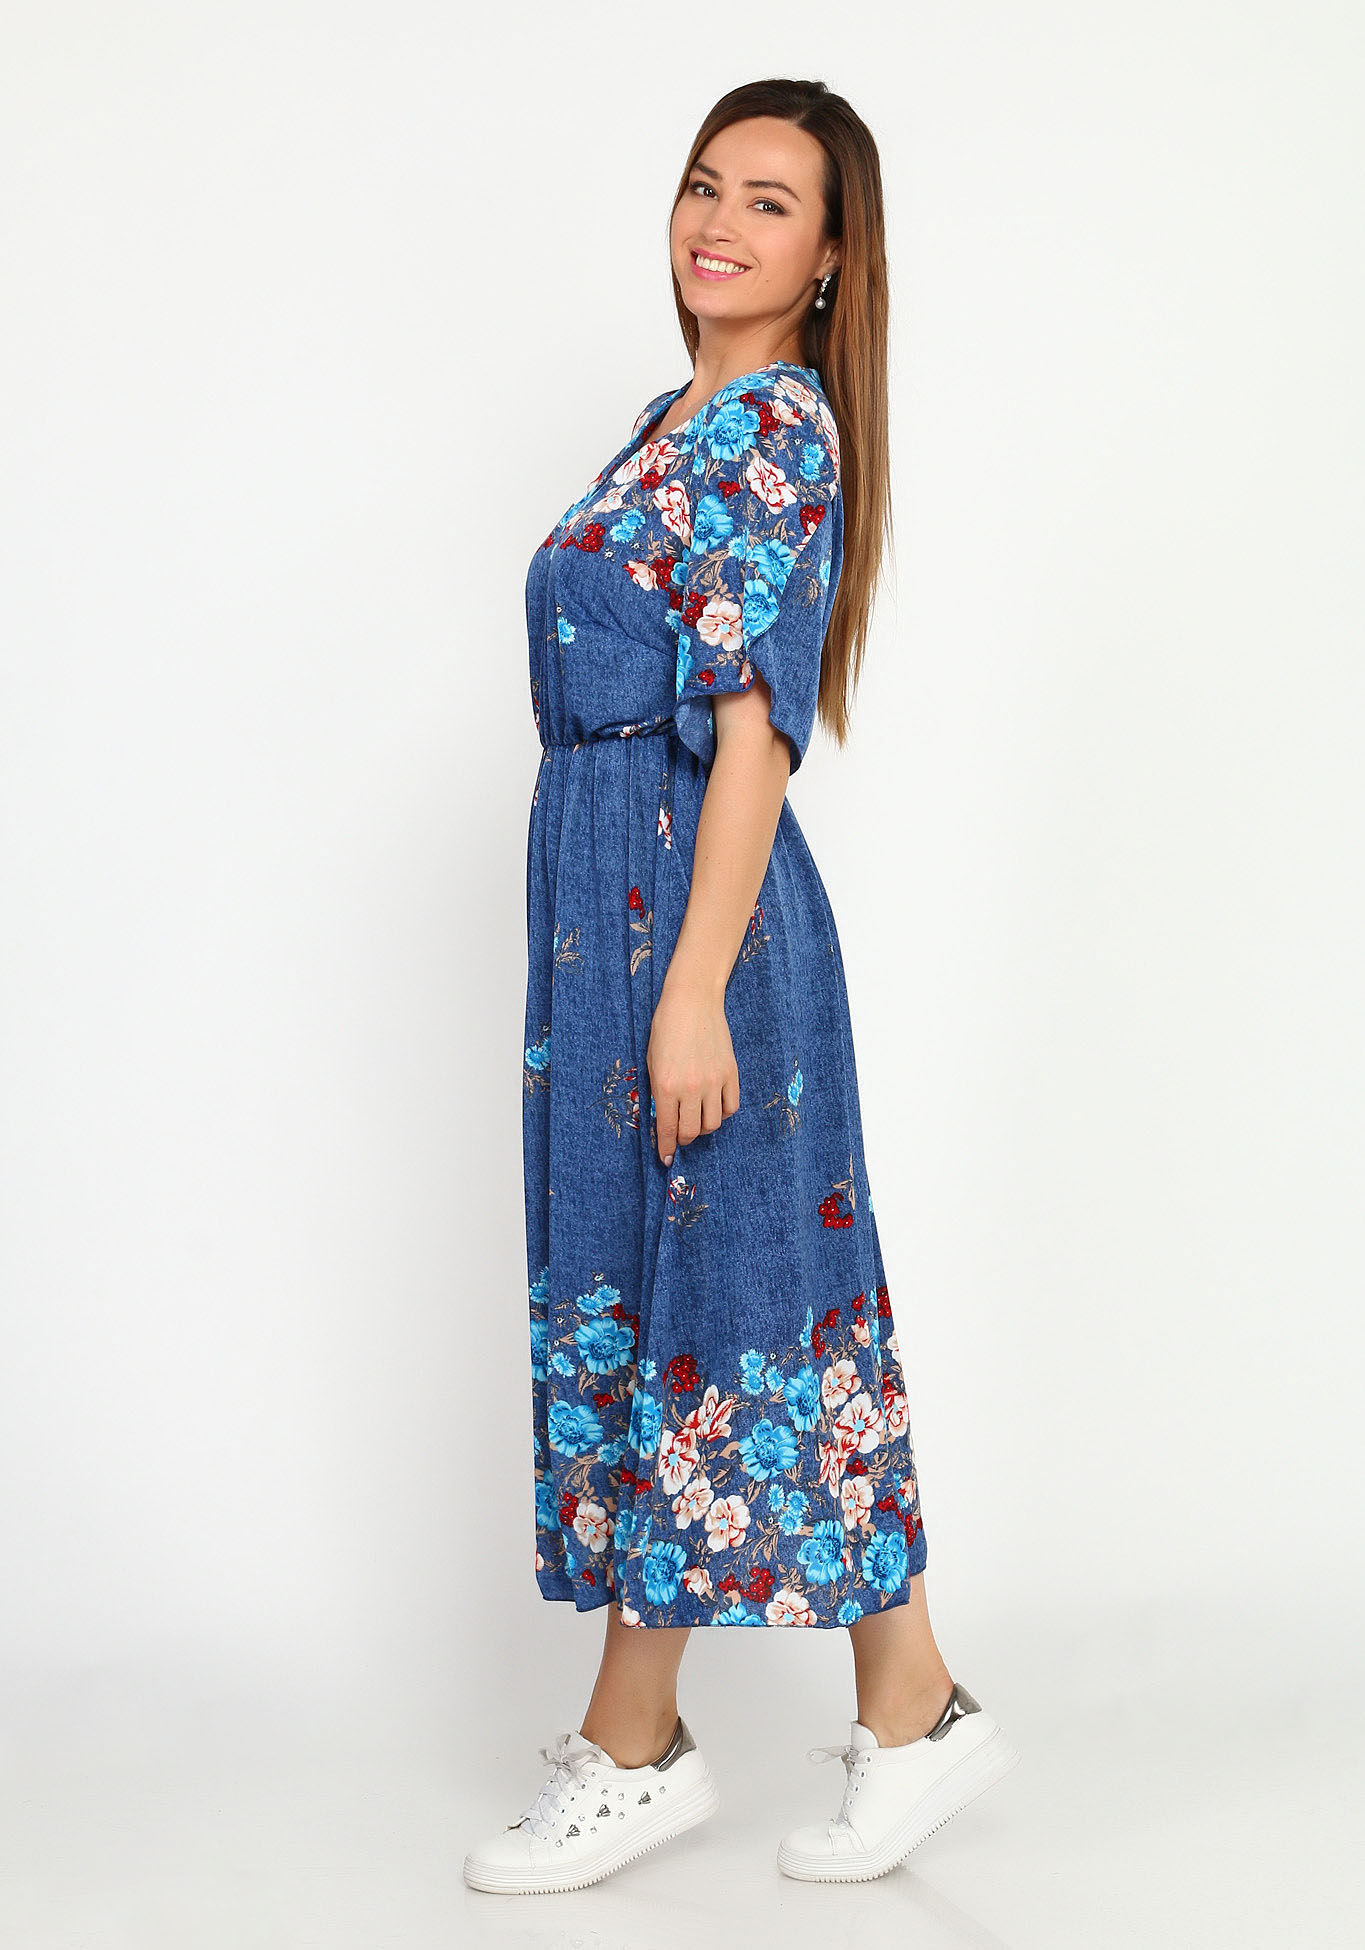 Платье с резинкой на талии и купонным принтом Bianka Modeno, размер 48, цвет голубые цветы - фото 3